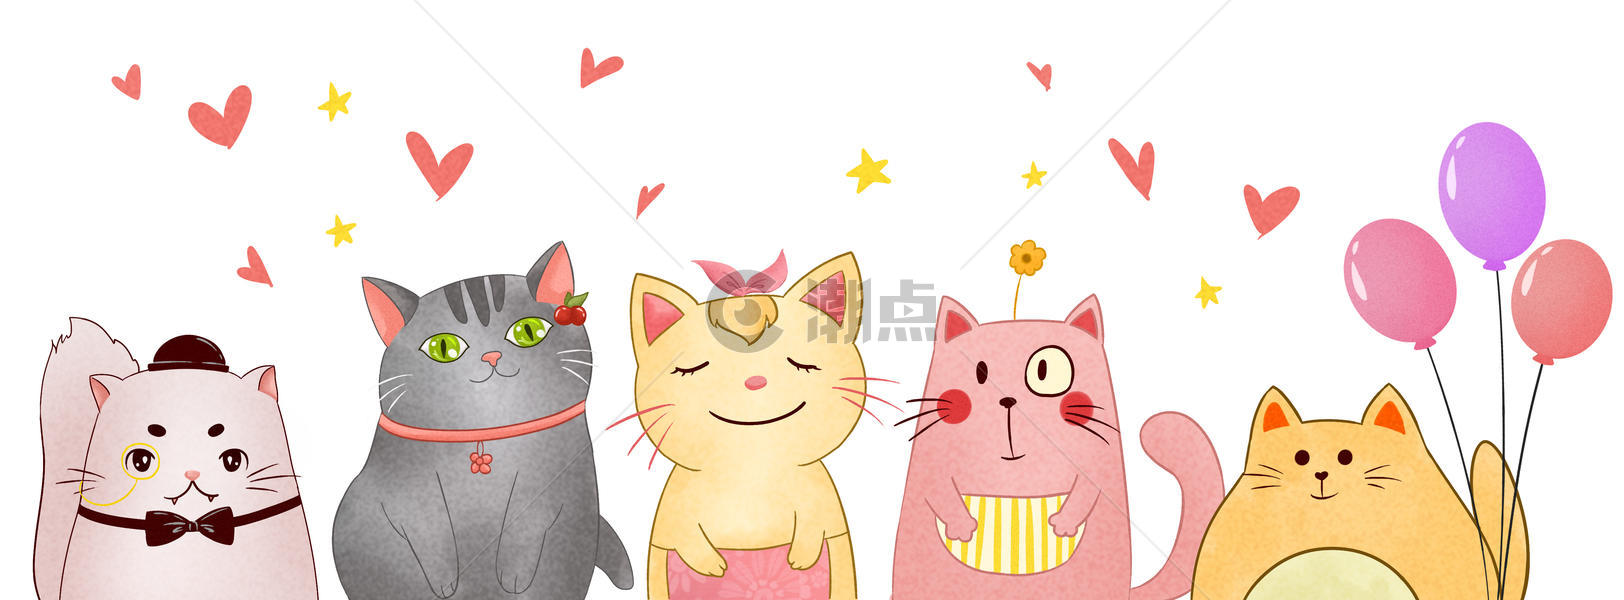 手绘可爱猫咪图片素材免费下载